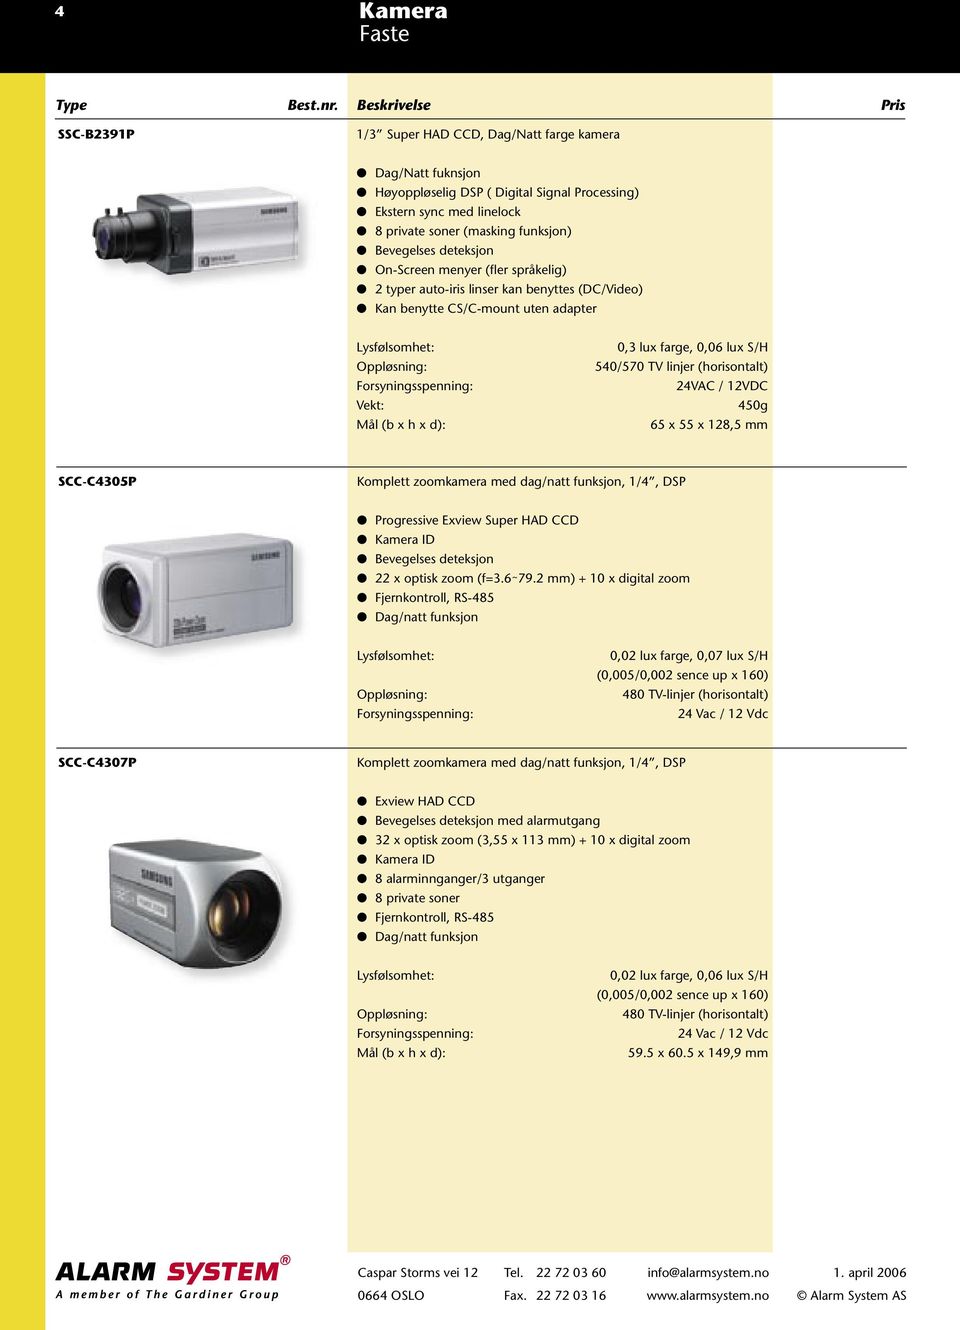 24VAC / 12VDC 450g 65 x 55 x 128,5 mm SCC-C4305P Komplett zoomkamera med dag/natt funksjon, 1/4, DSP Progressive Exview Super HAD CCD Kamera ID Bevegelses deteksjon 22 x optisk zoom (f=3.6 79.